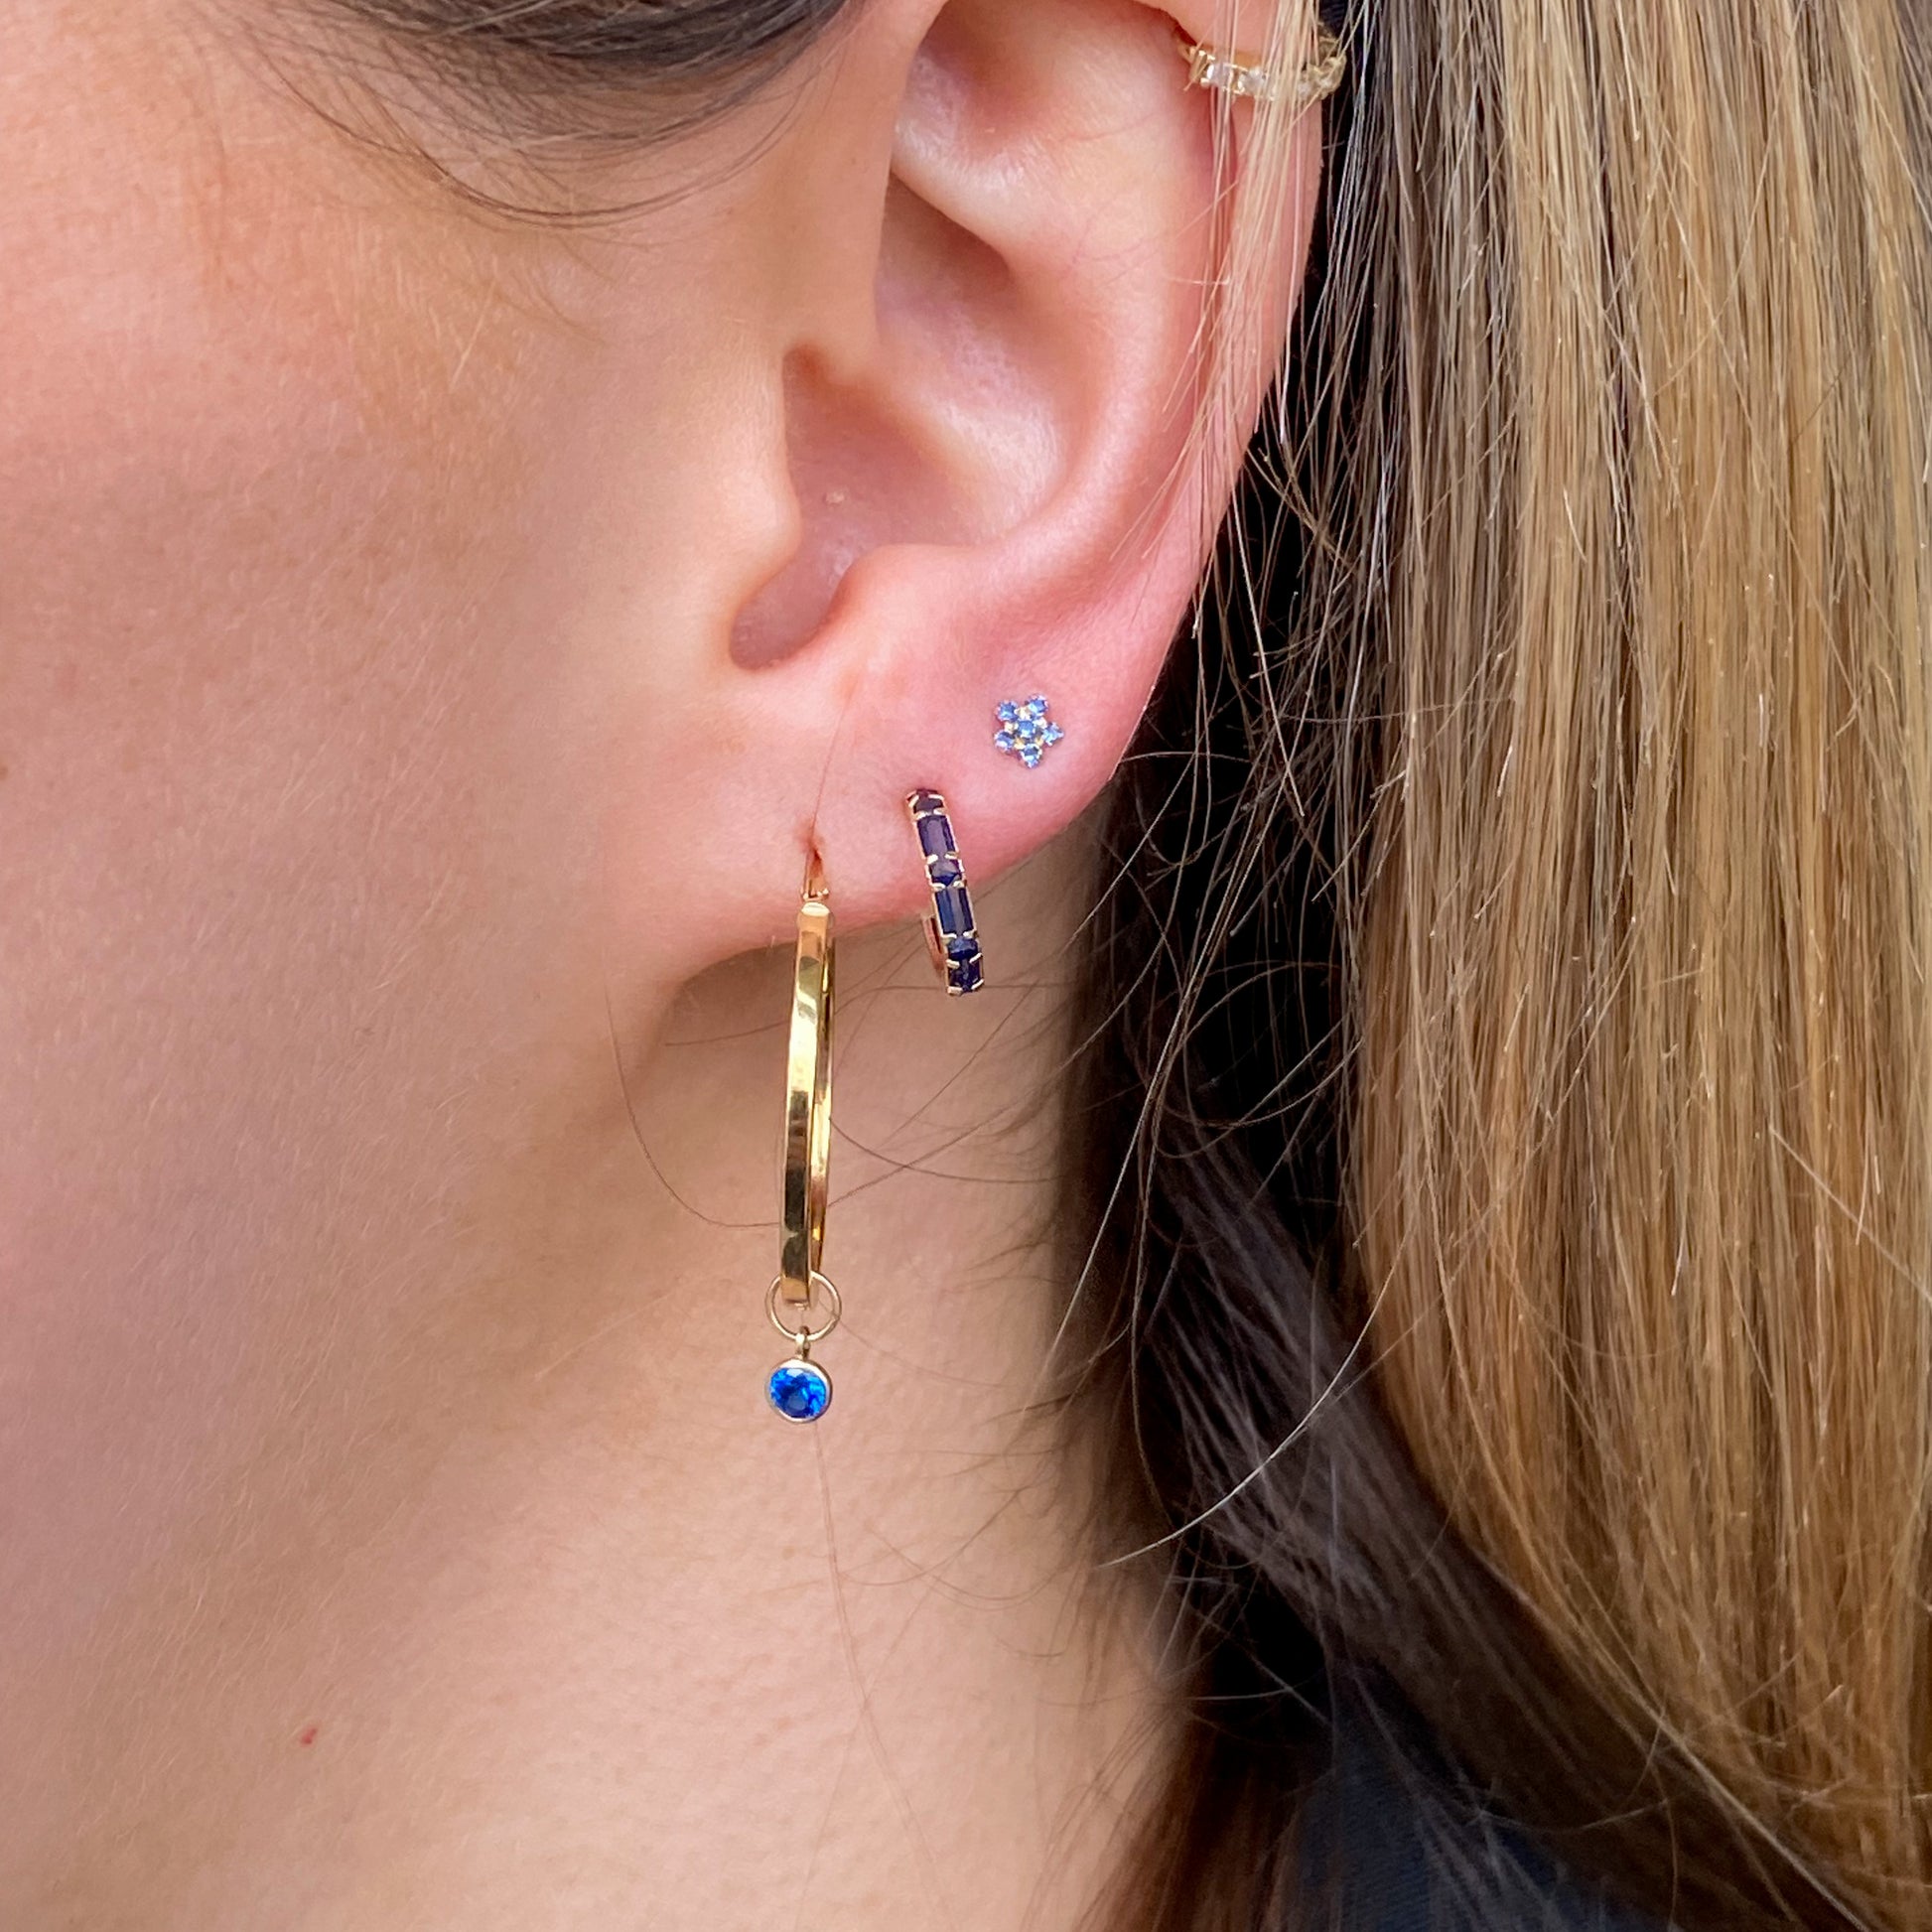 9ct Gold Totsy Blue CZ Flower Stud Earrings - John Ross Jewellers